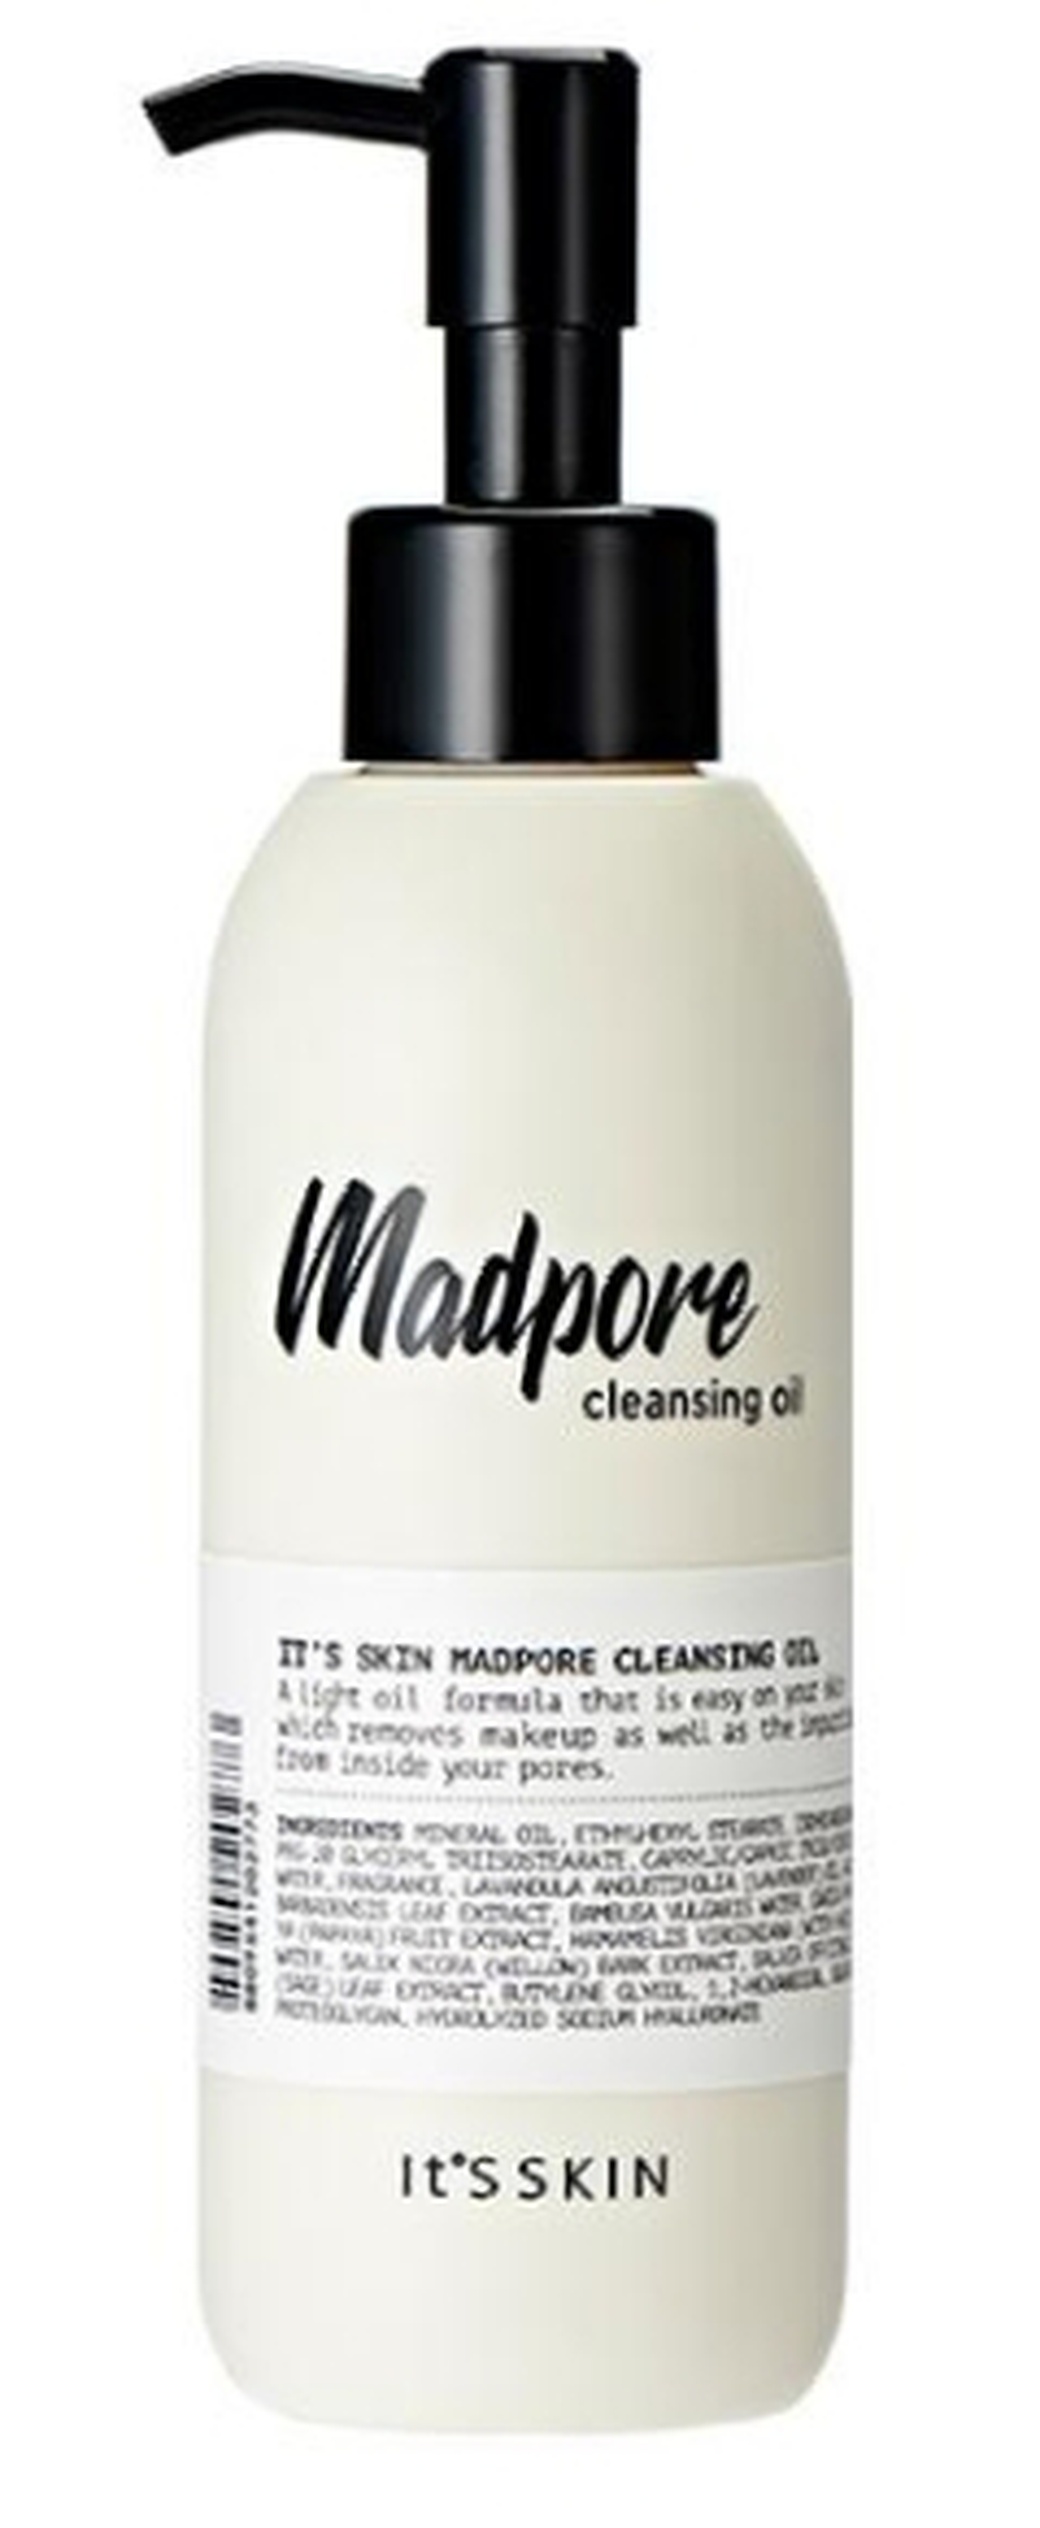 It's Skin Гидрофильное масло для очищения пор Mad Pore, 155 мл фото